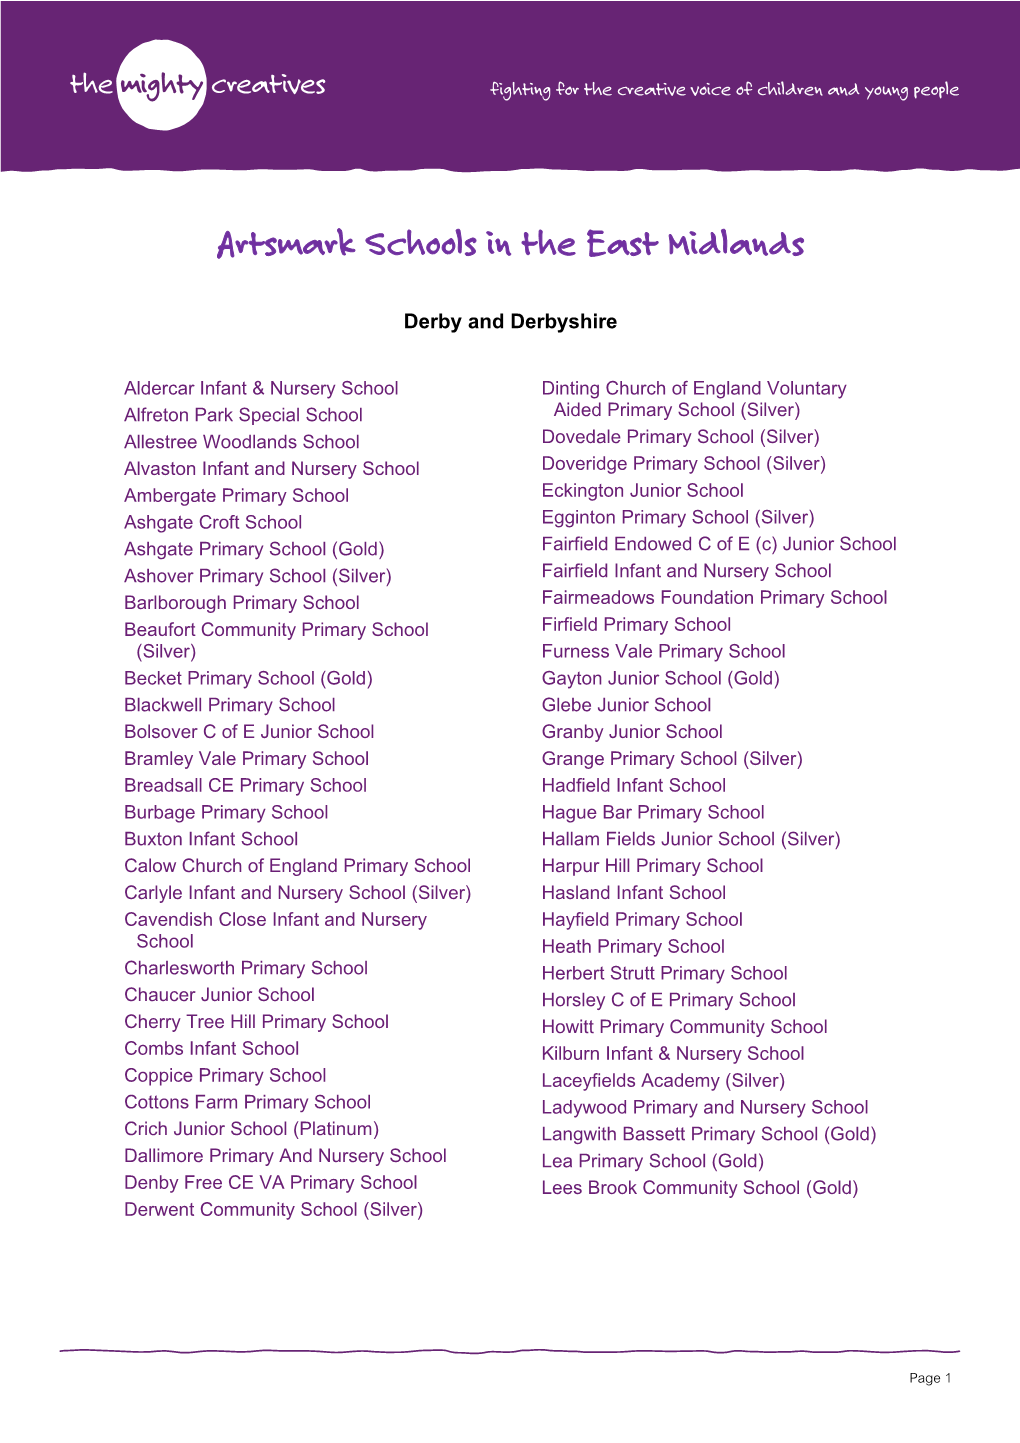 Artsmark Schools in the East Midlands